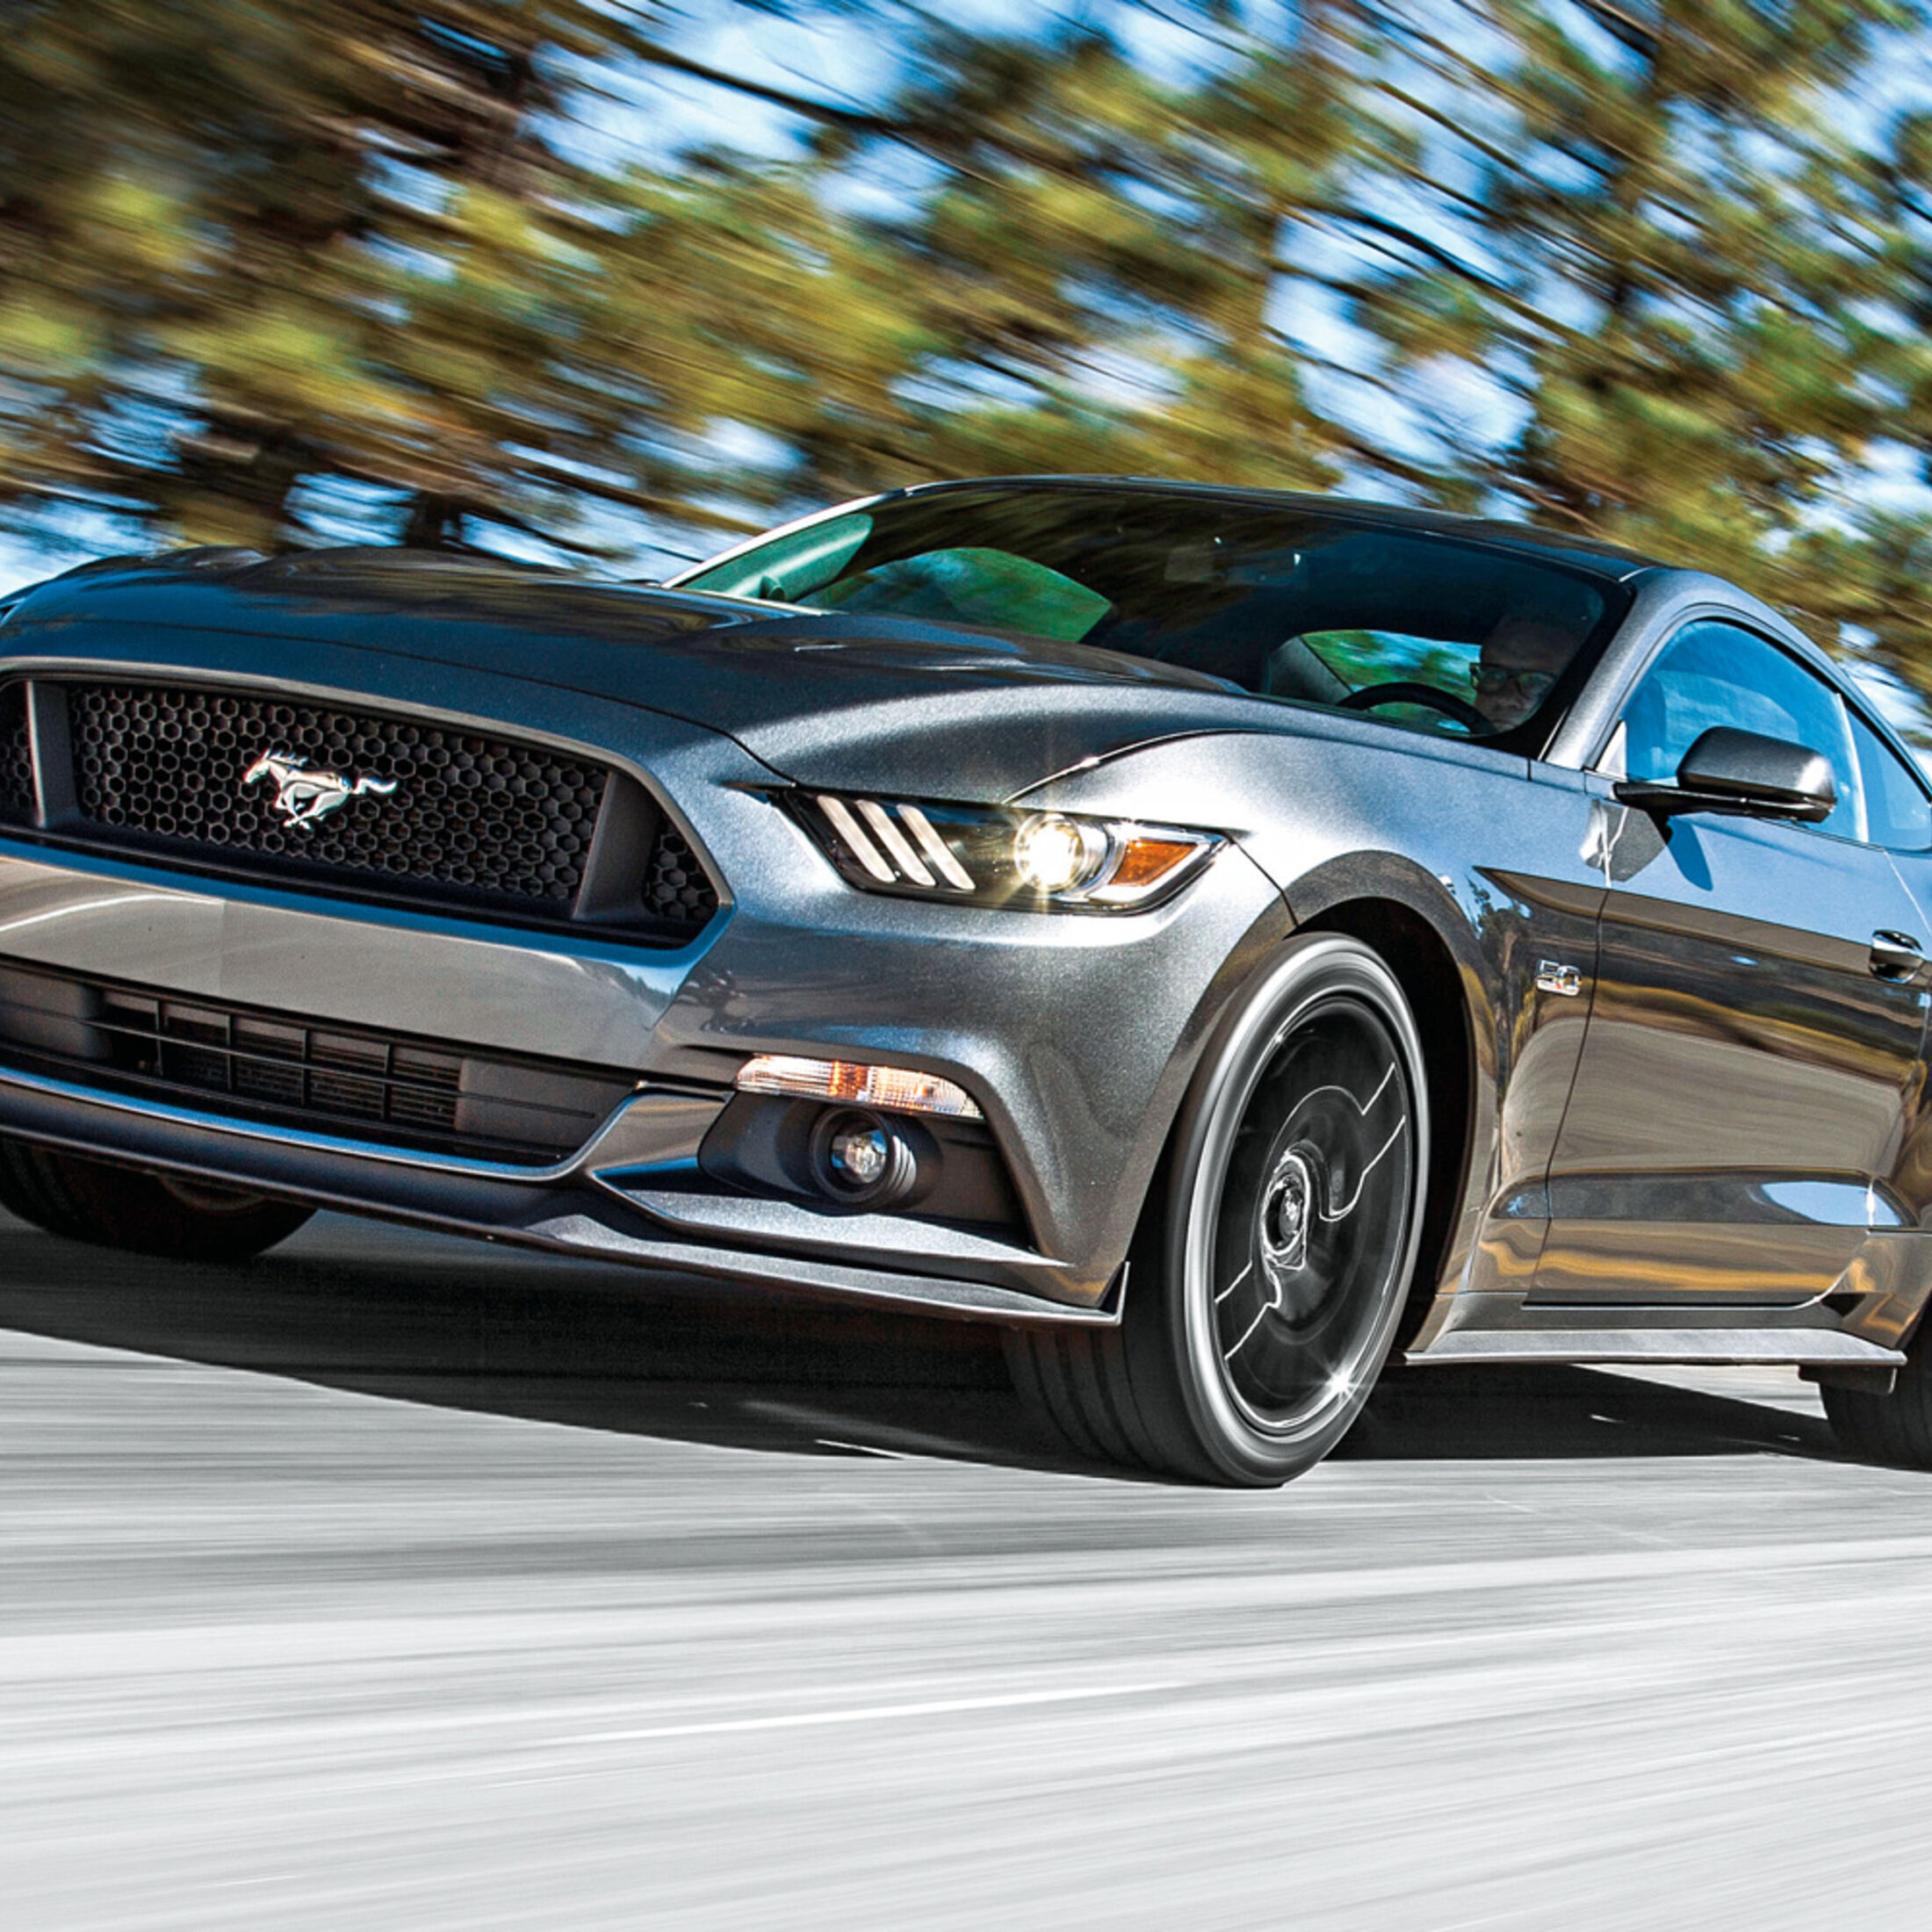 https://imgr1.auto-motor-und-sport.de/Ford-Mustang-Frontansicht-jsonLd1x1-644d7fc8-816460.jpg